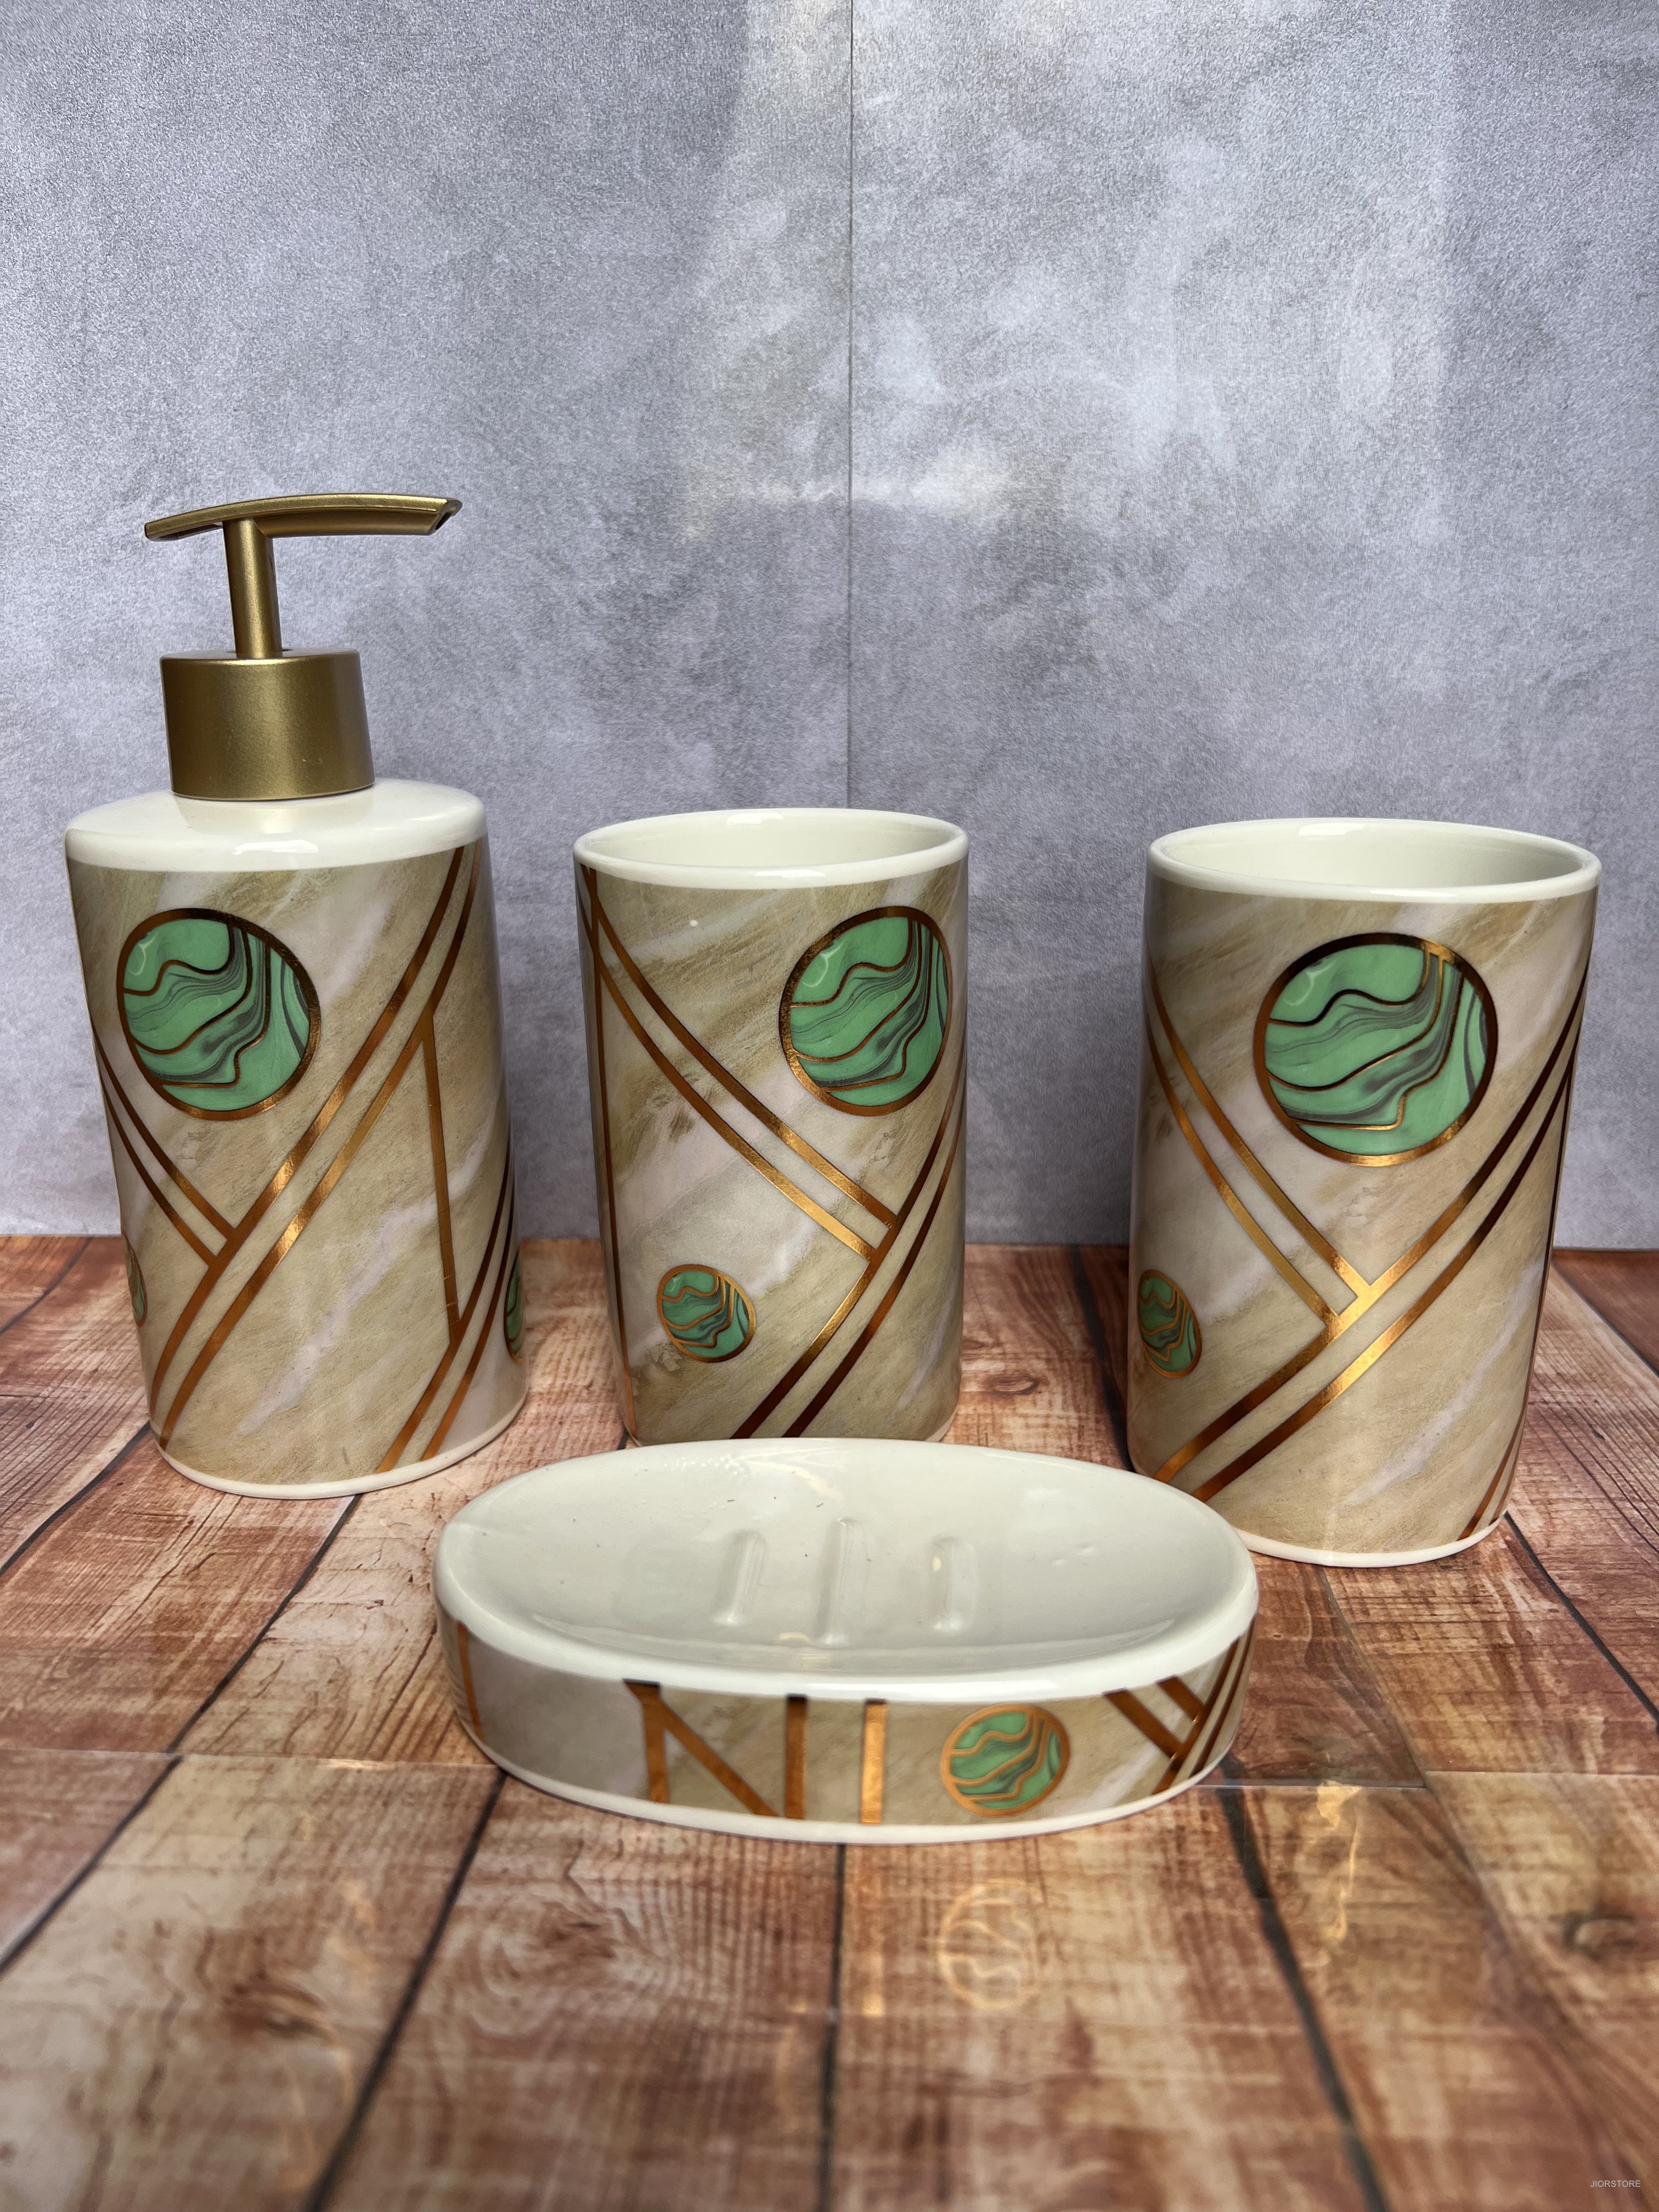  JIWEIMO Juego de 4 accesorios de baño de cerámica